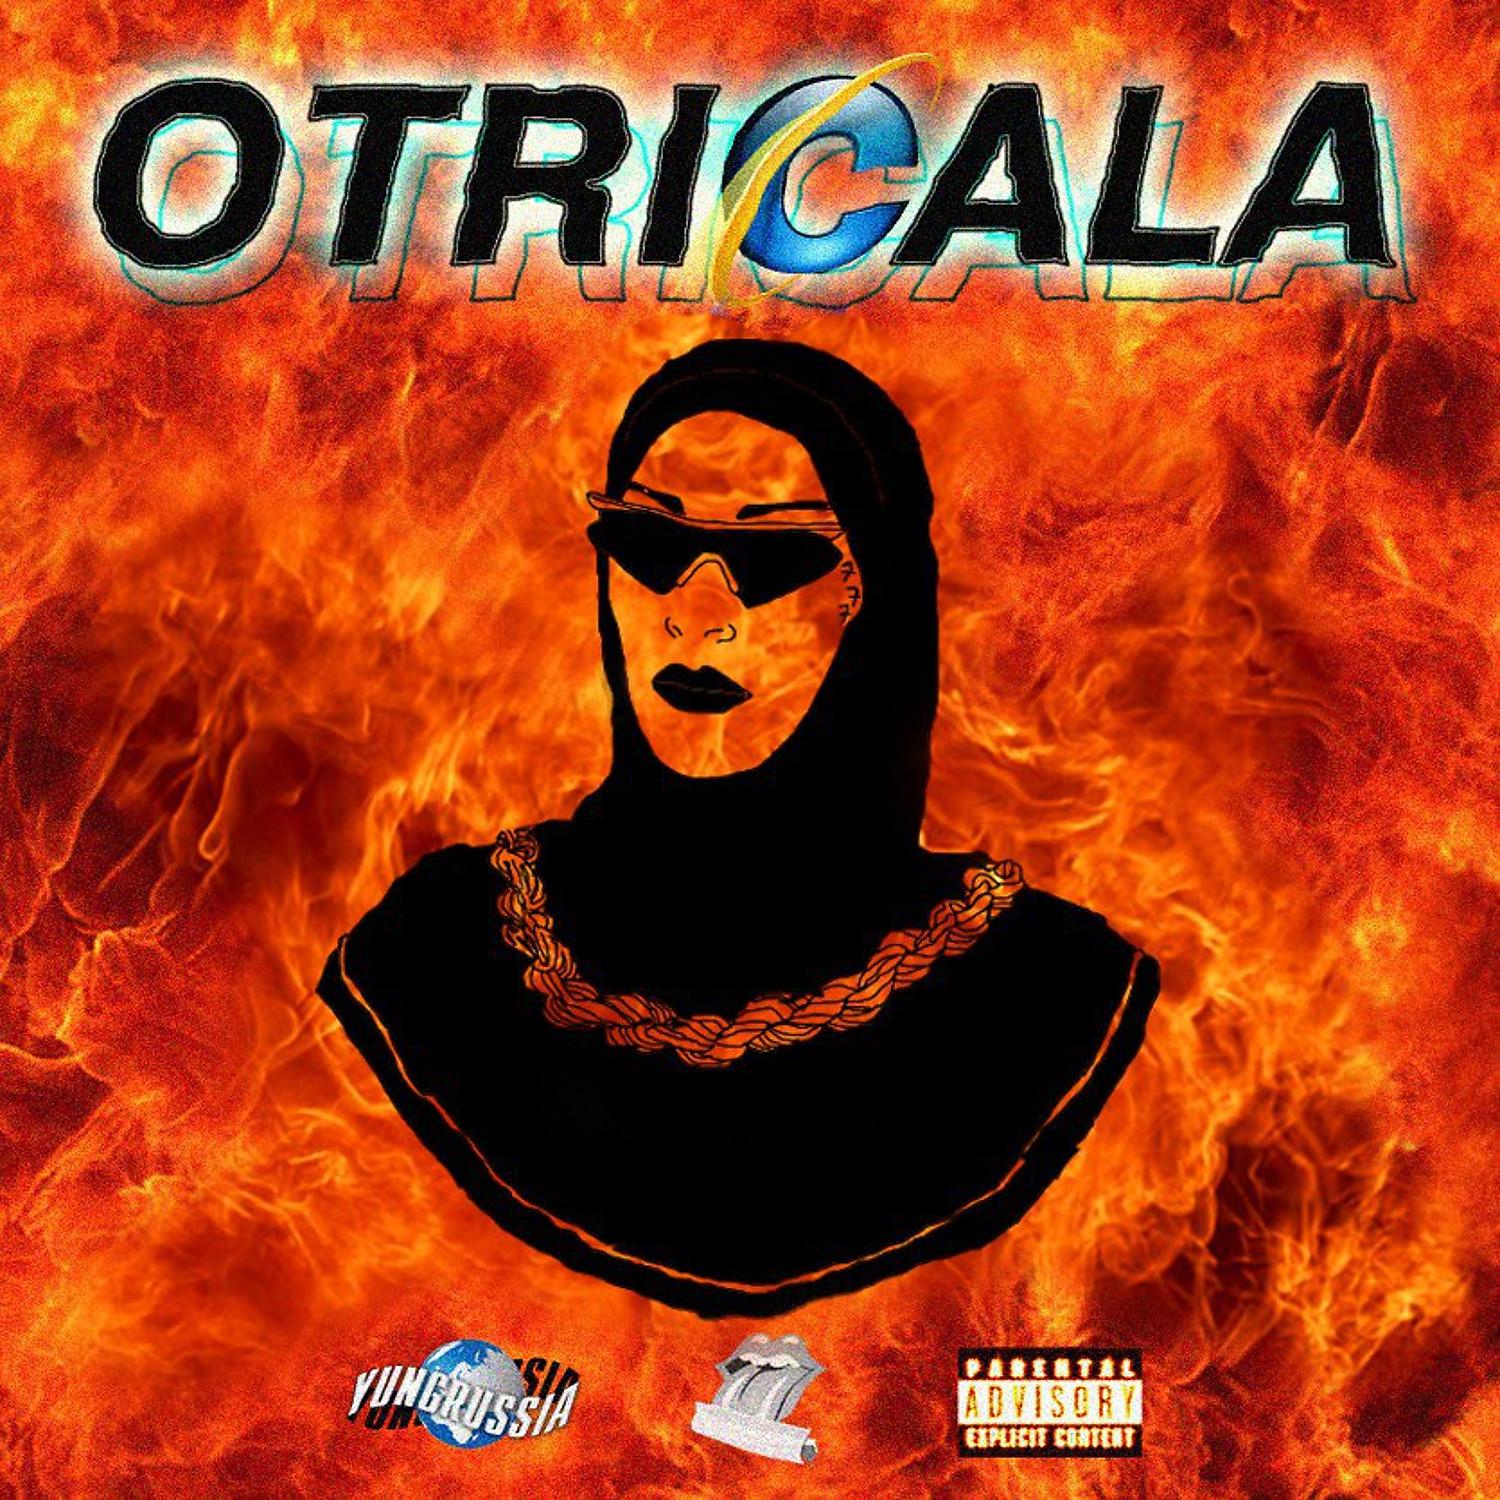 Постер альбома OTRICALA